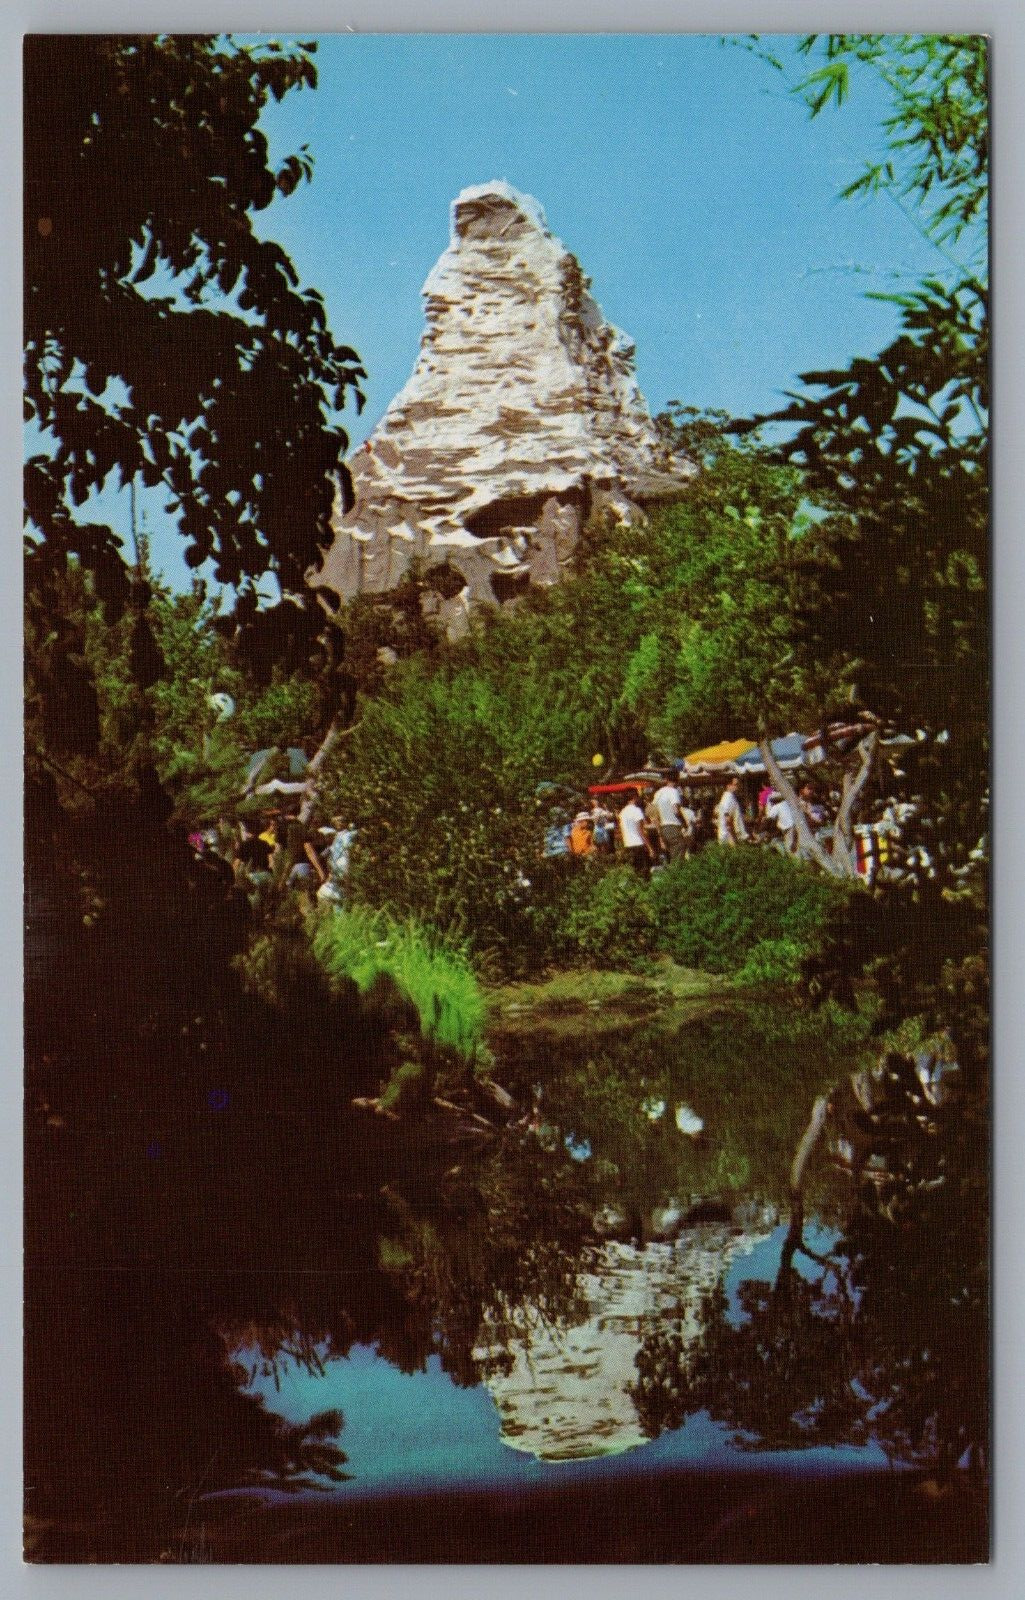 Disneyland Matterhorn Mountain Bobsled 1-337 Postcard